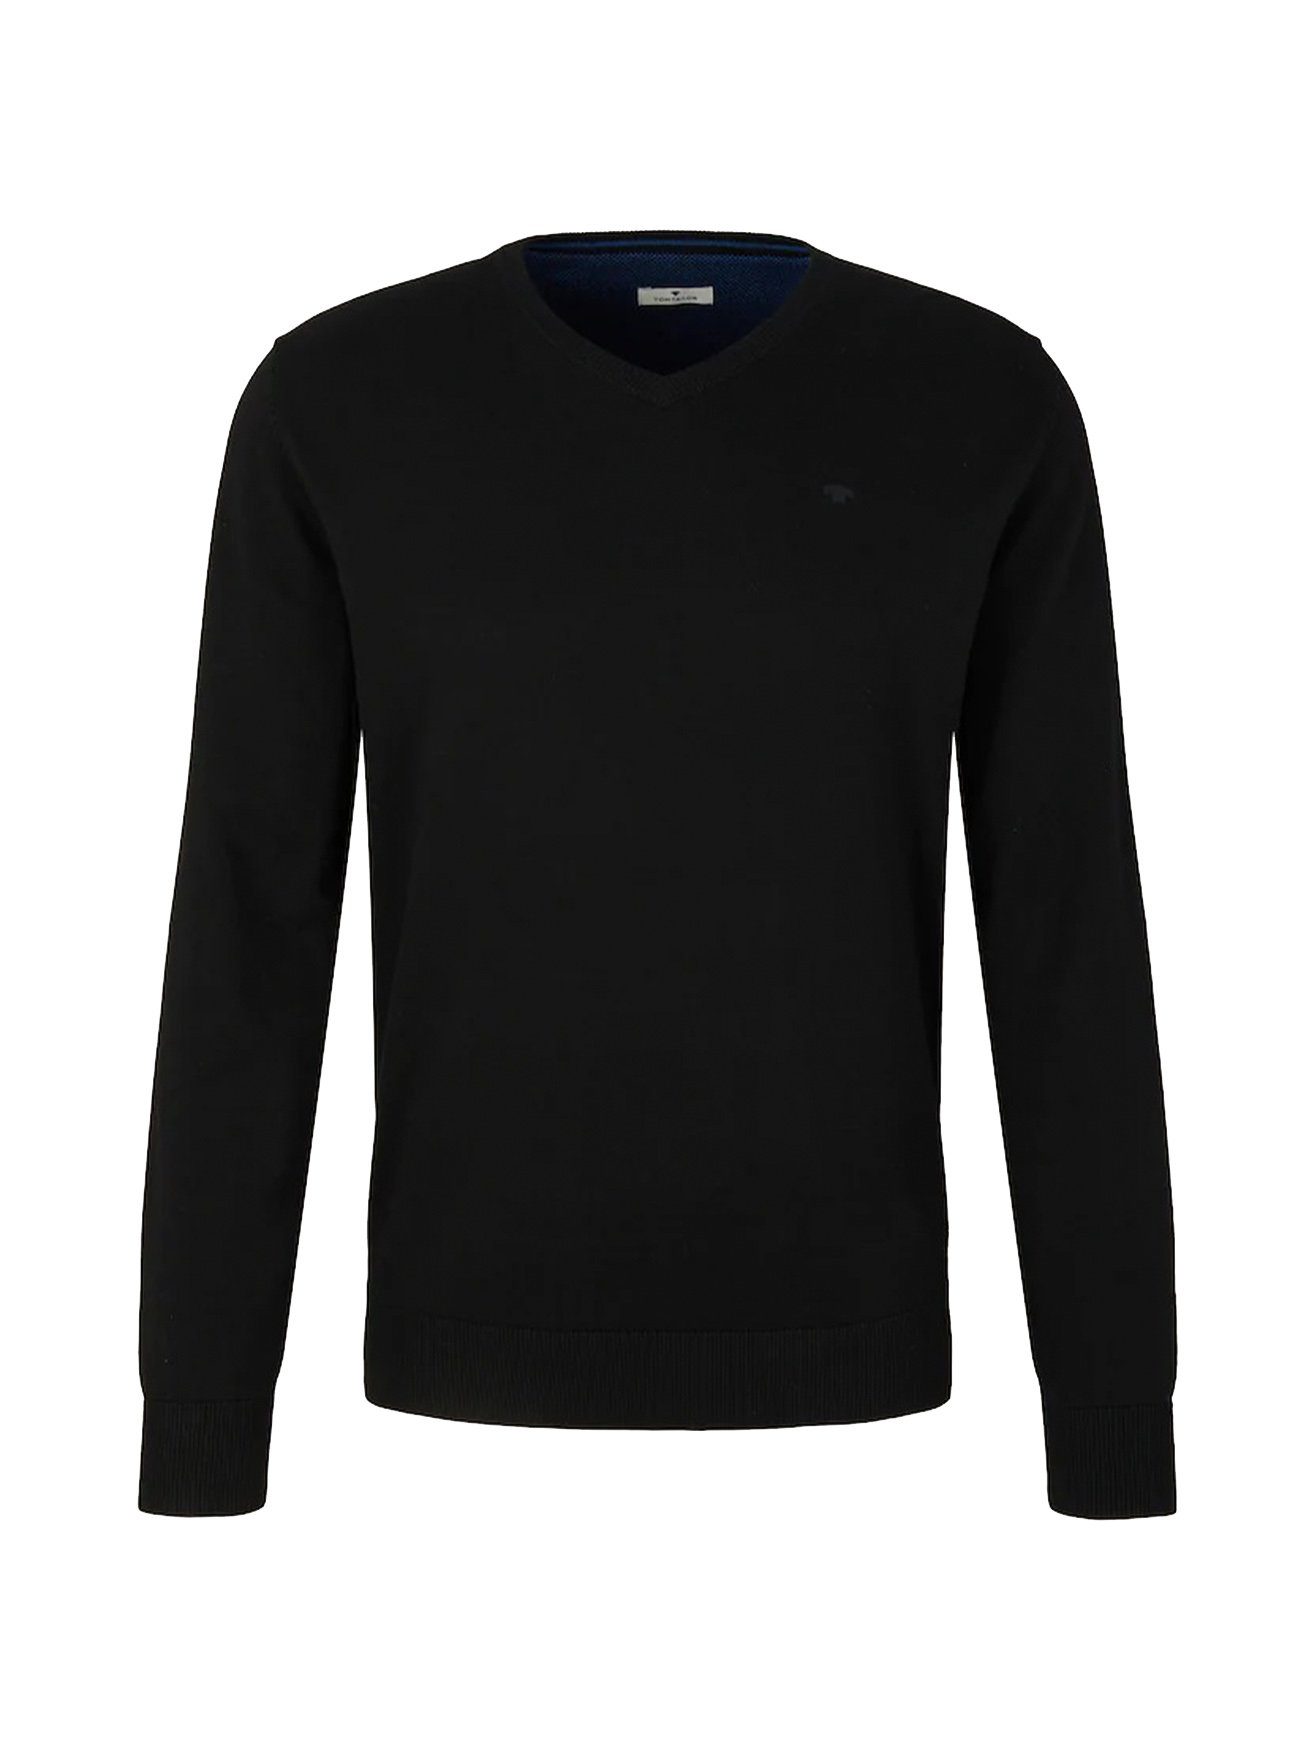 TAILOR Basic Sweater TOM 4652 in Strickpullover Pullover Dünner V-Ausschnitt Schwarz-2 Feinstrick